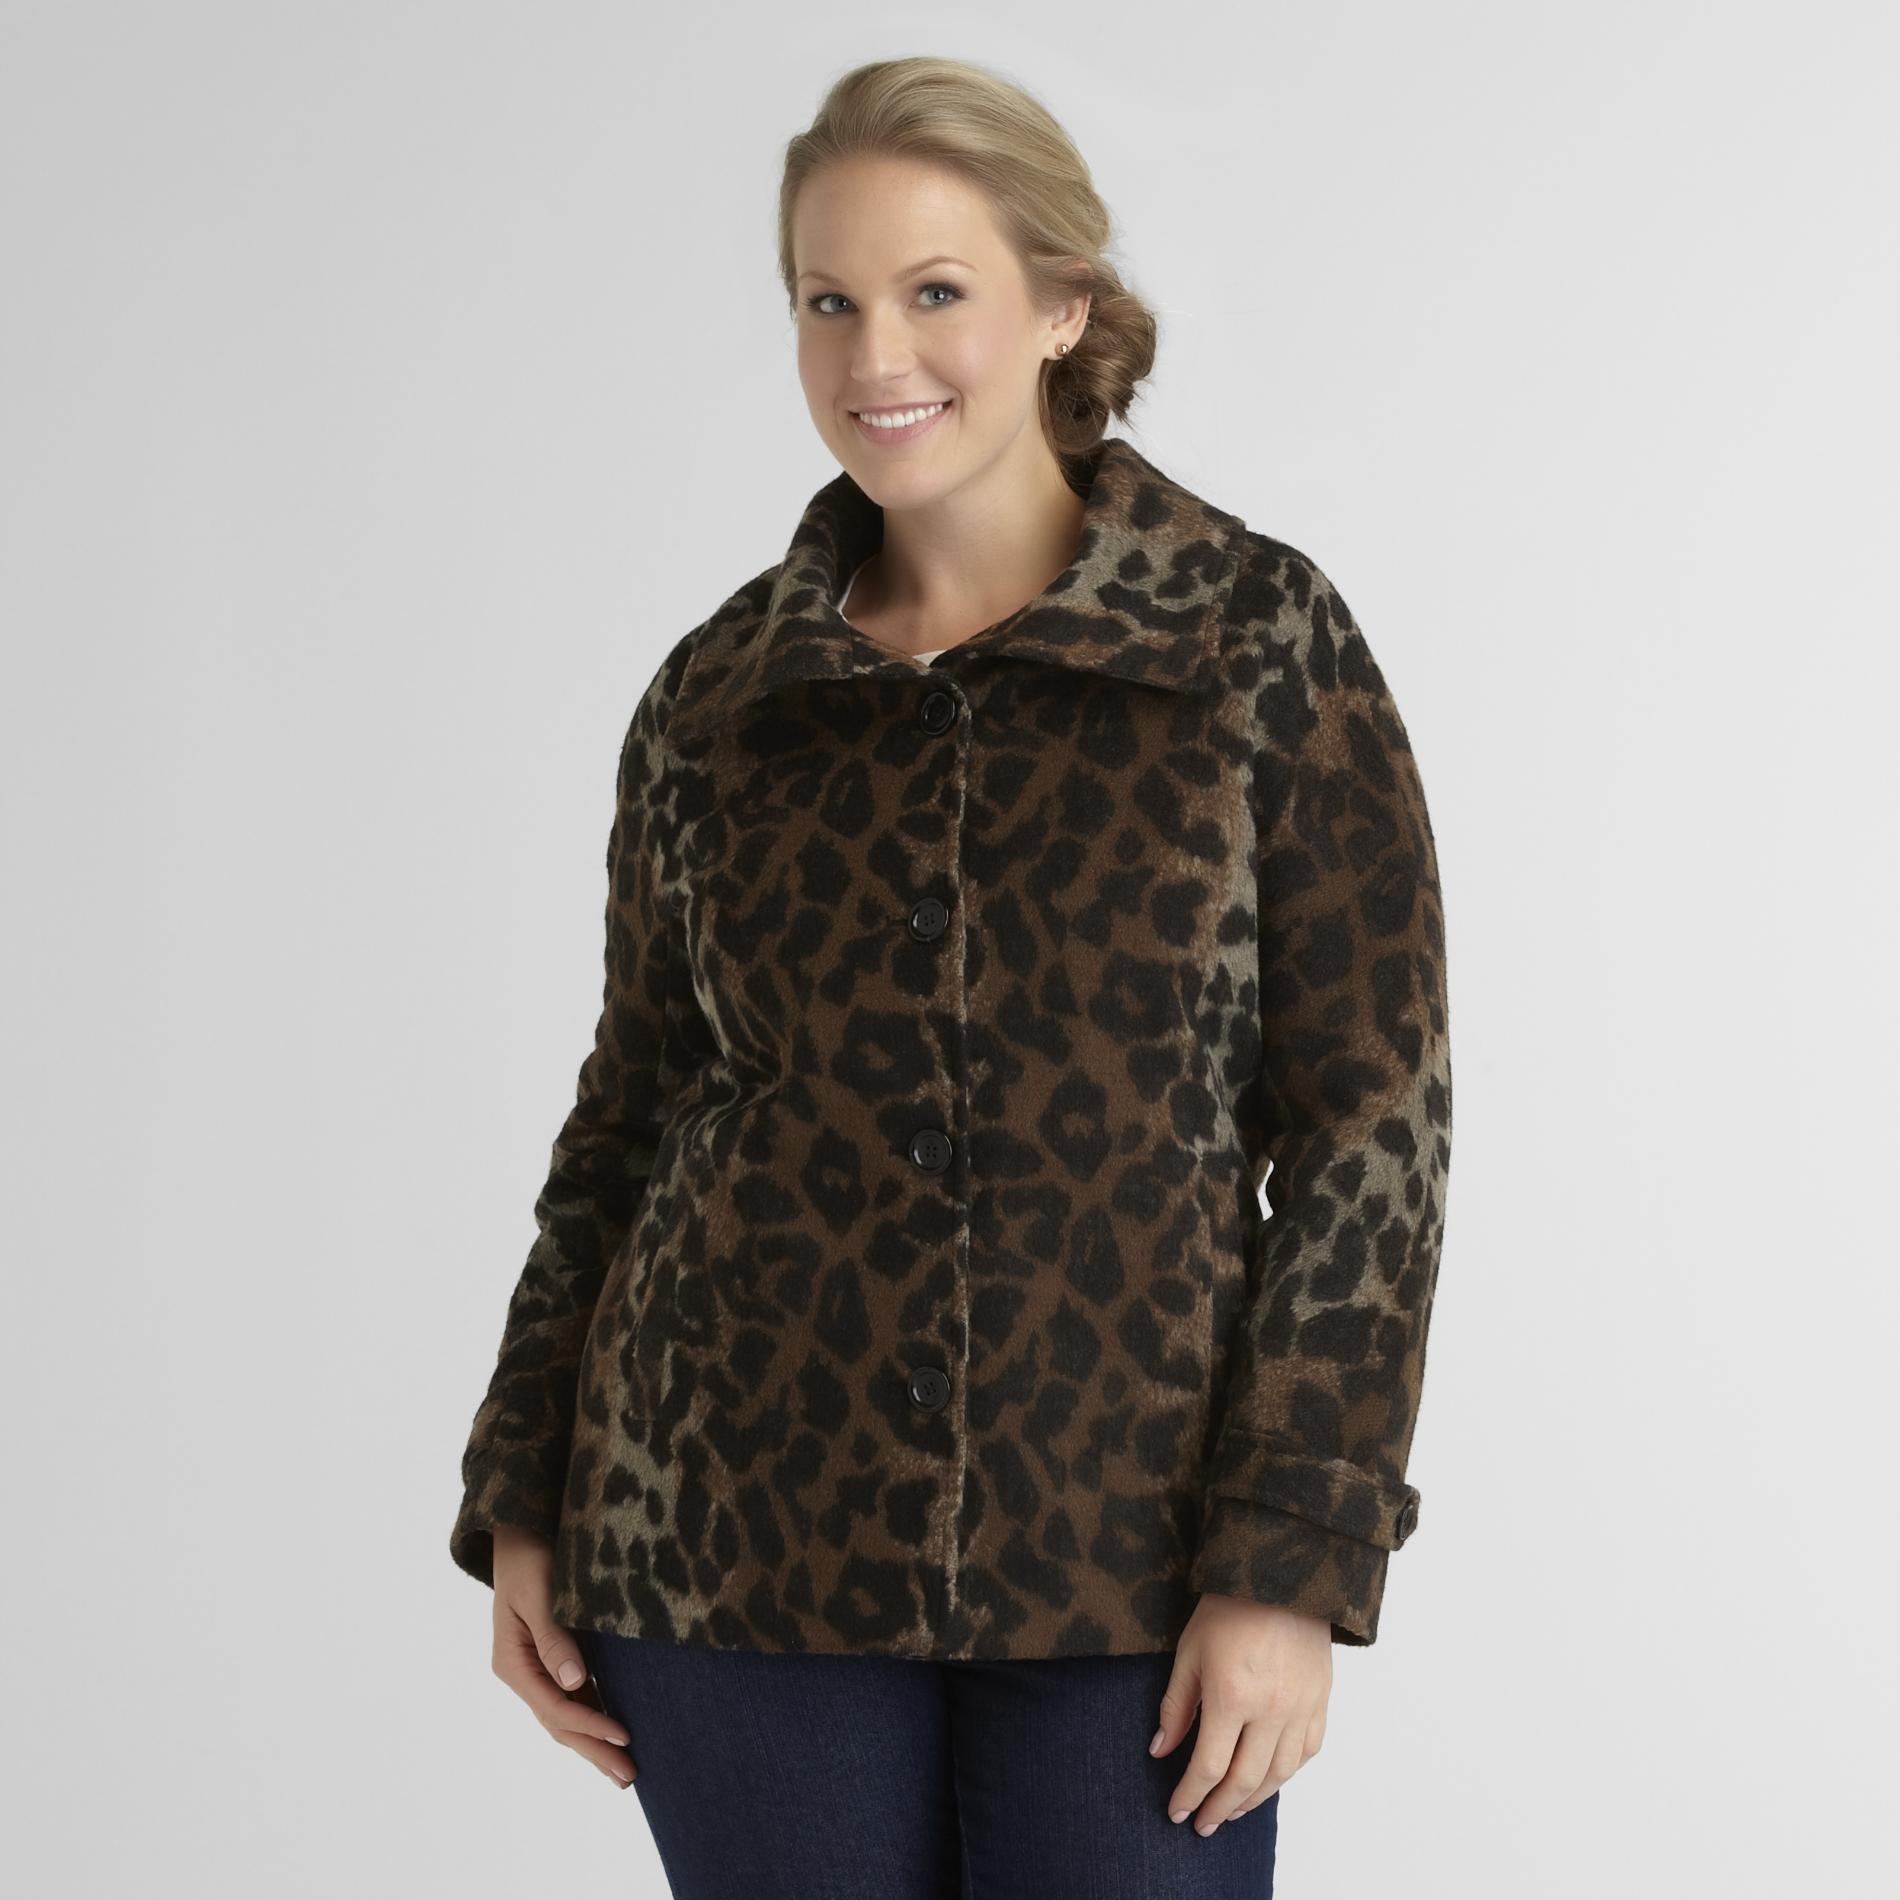 Jaclyn Smith Women's Faux Wool Coat - Leopard Print